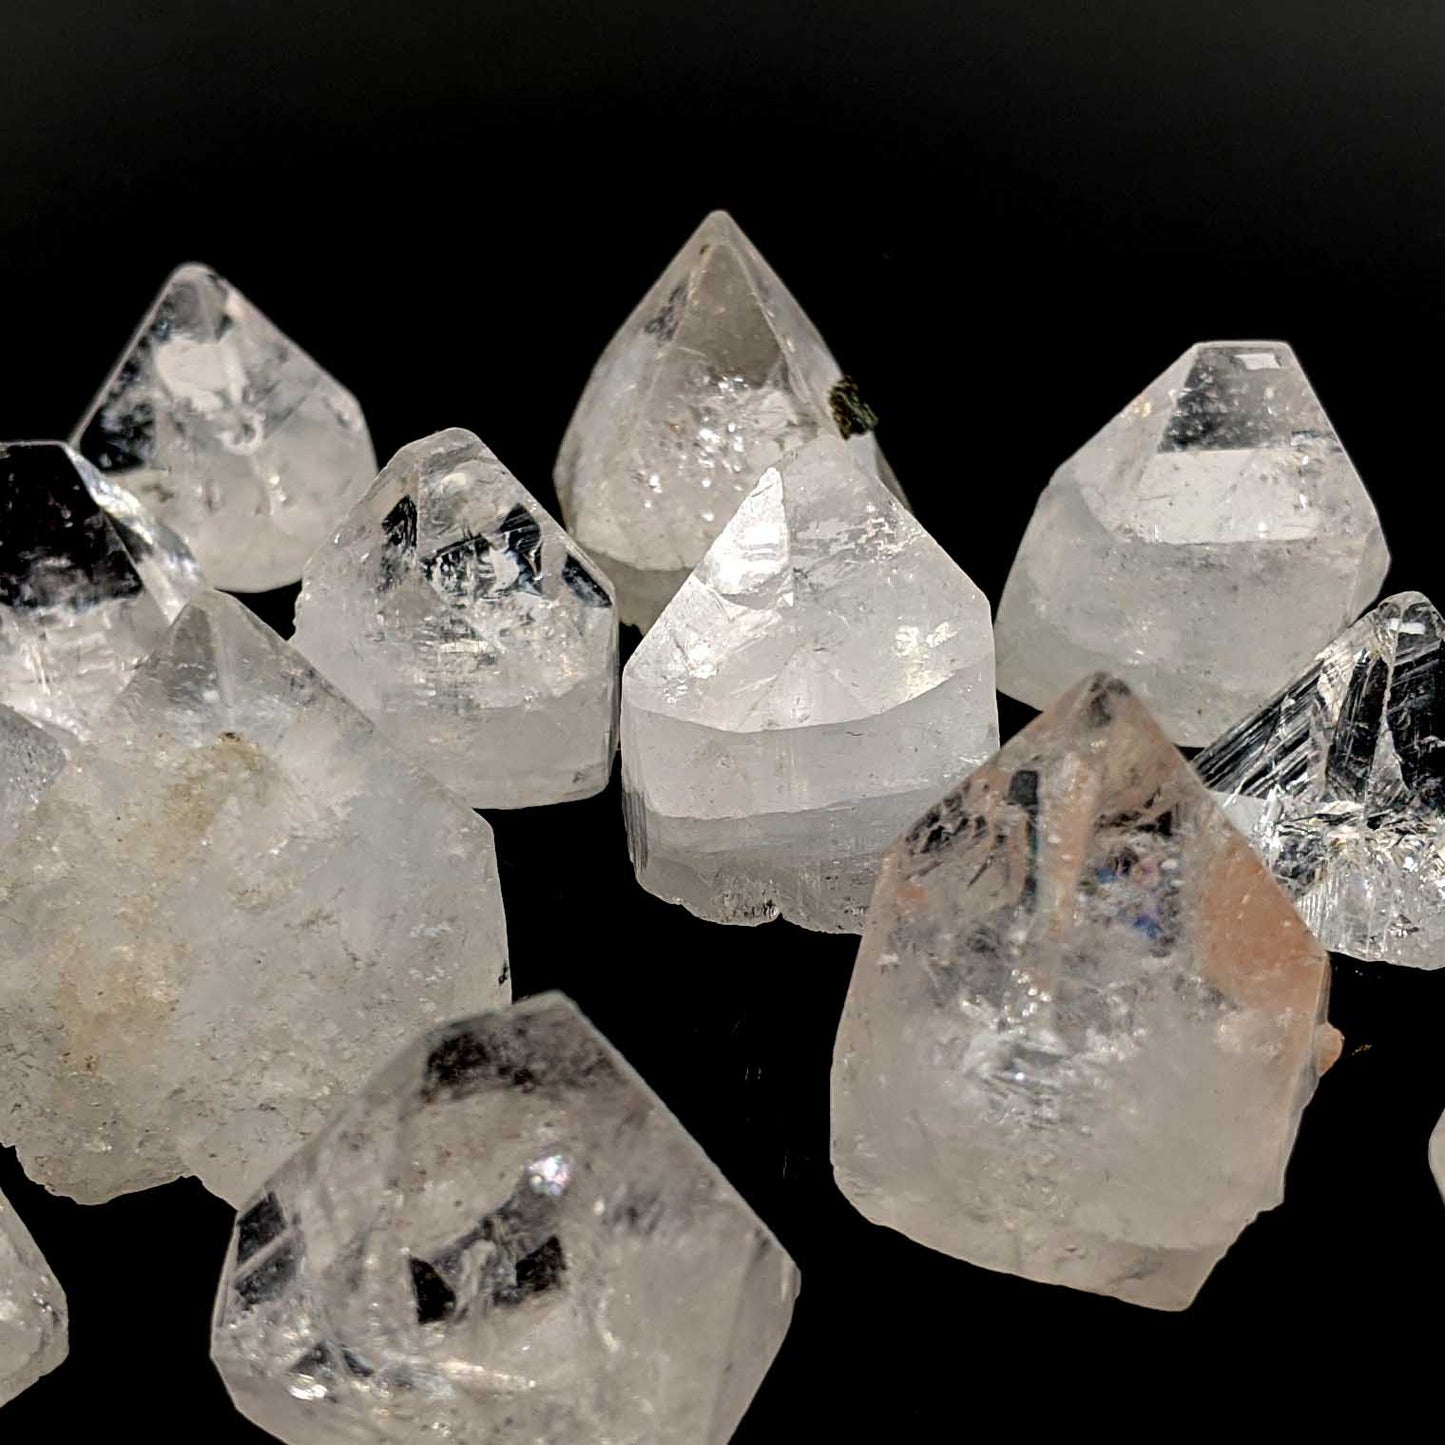 Apophyllite Crystals